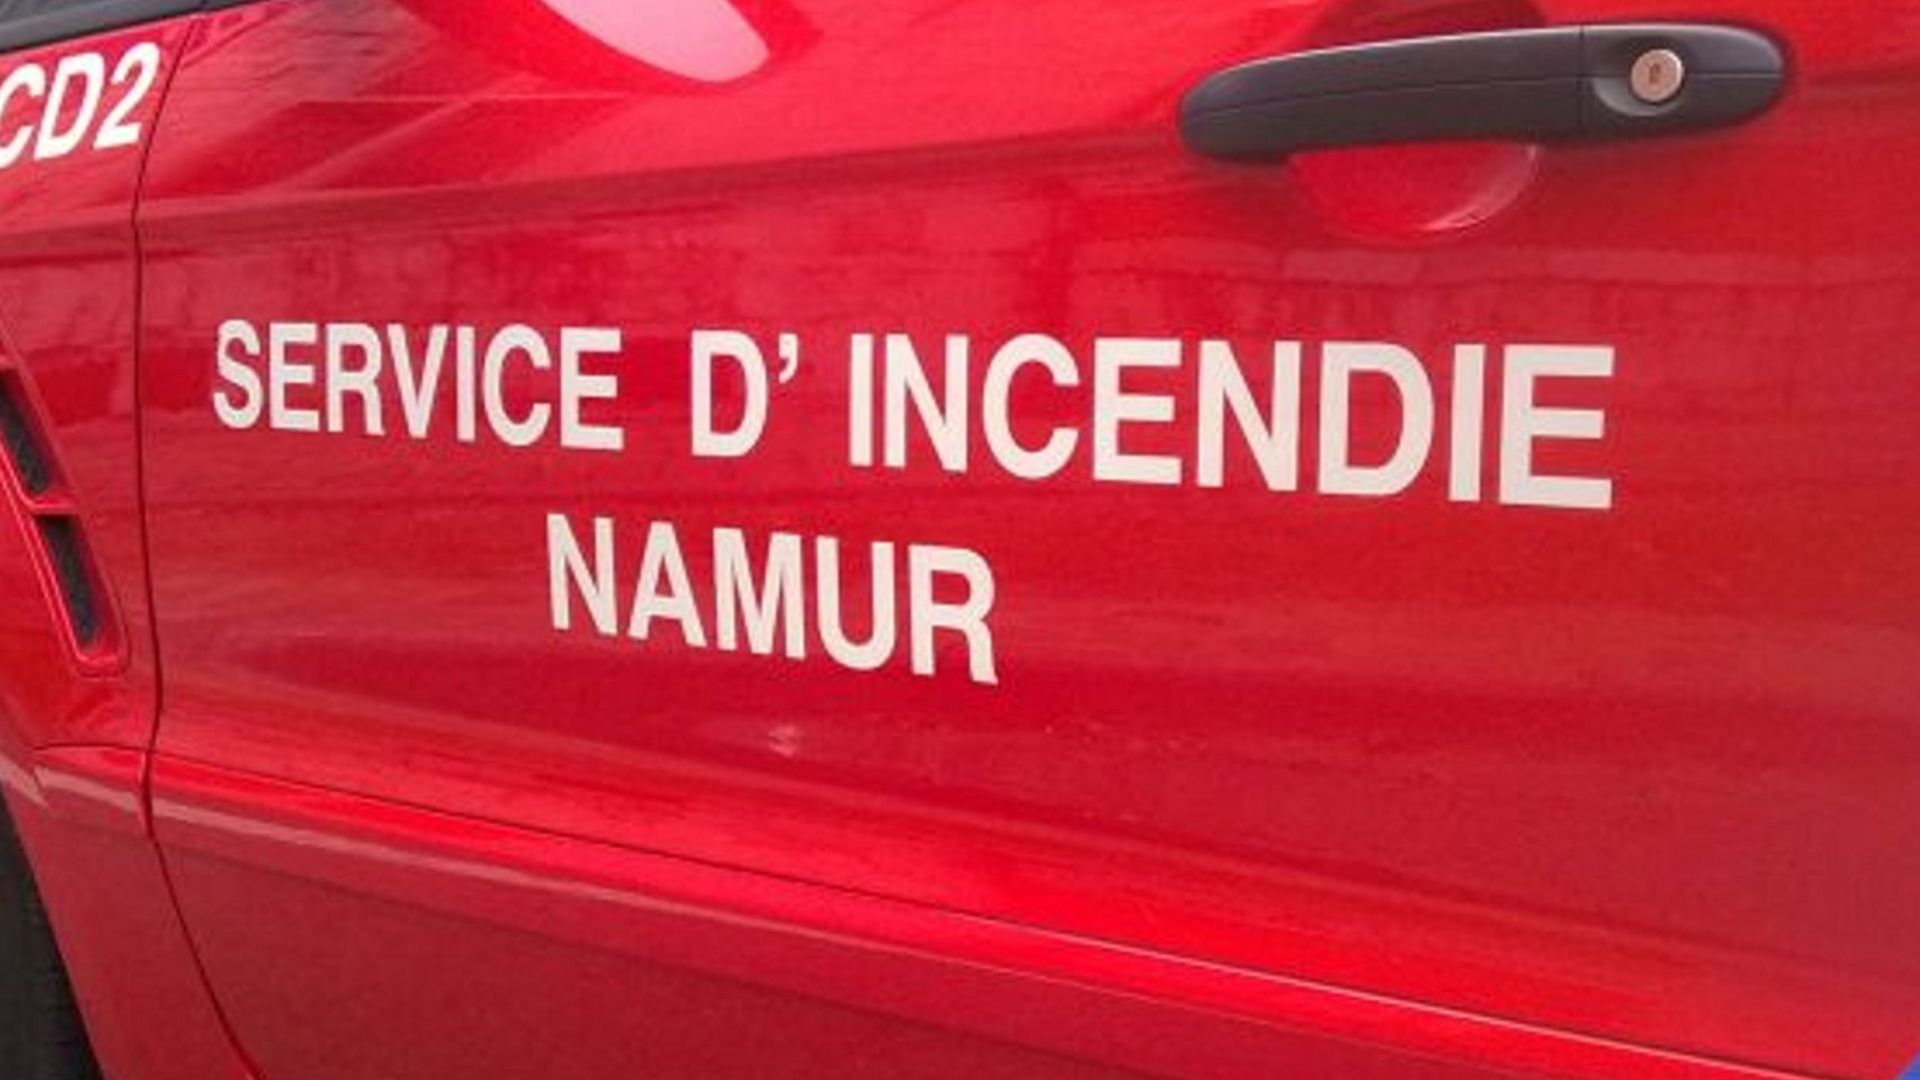 Les pompiers de Namur sont intervenus rapidement pour éteindre les flammes.